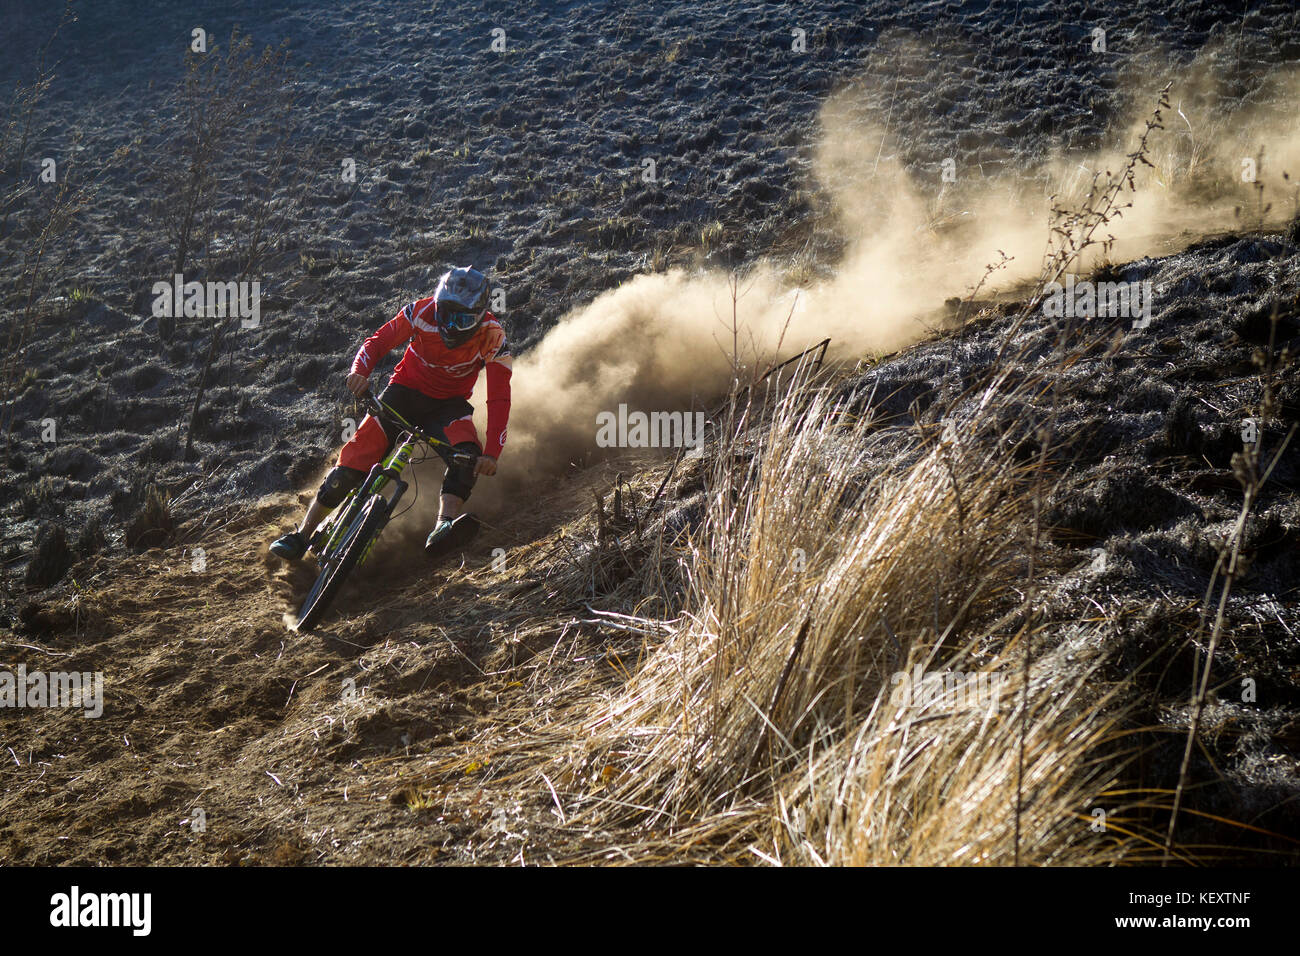 Vorderansicht von Biker, der Staub auf der Downhill-Strecke aufwirbelt, Tenango, Bundesstaat Mexiko, Mexiko Stockfoto